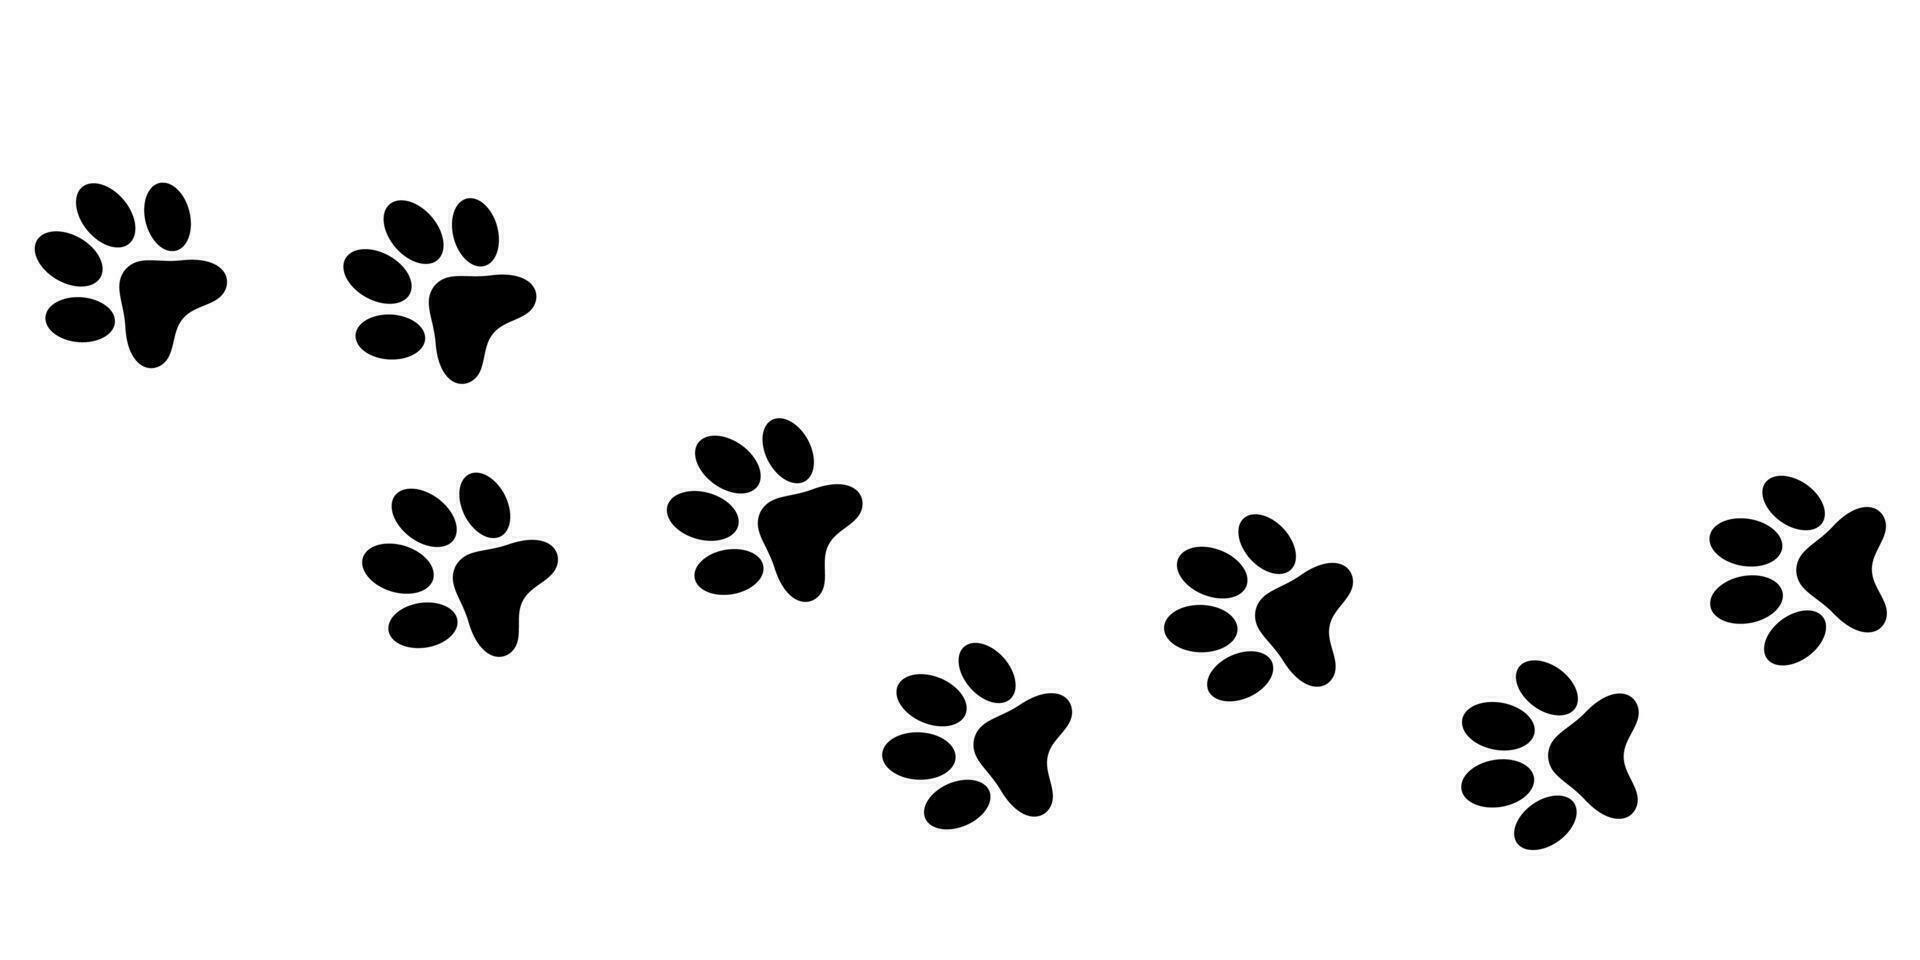 hund tassar. djur- Tass grafik, vektor annorlunda djur fotspår svart på vit illustration. hund, valp silhuett djur- diagonal spår.